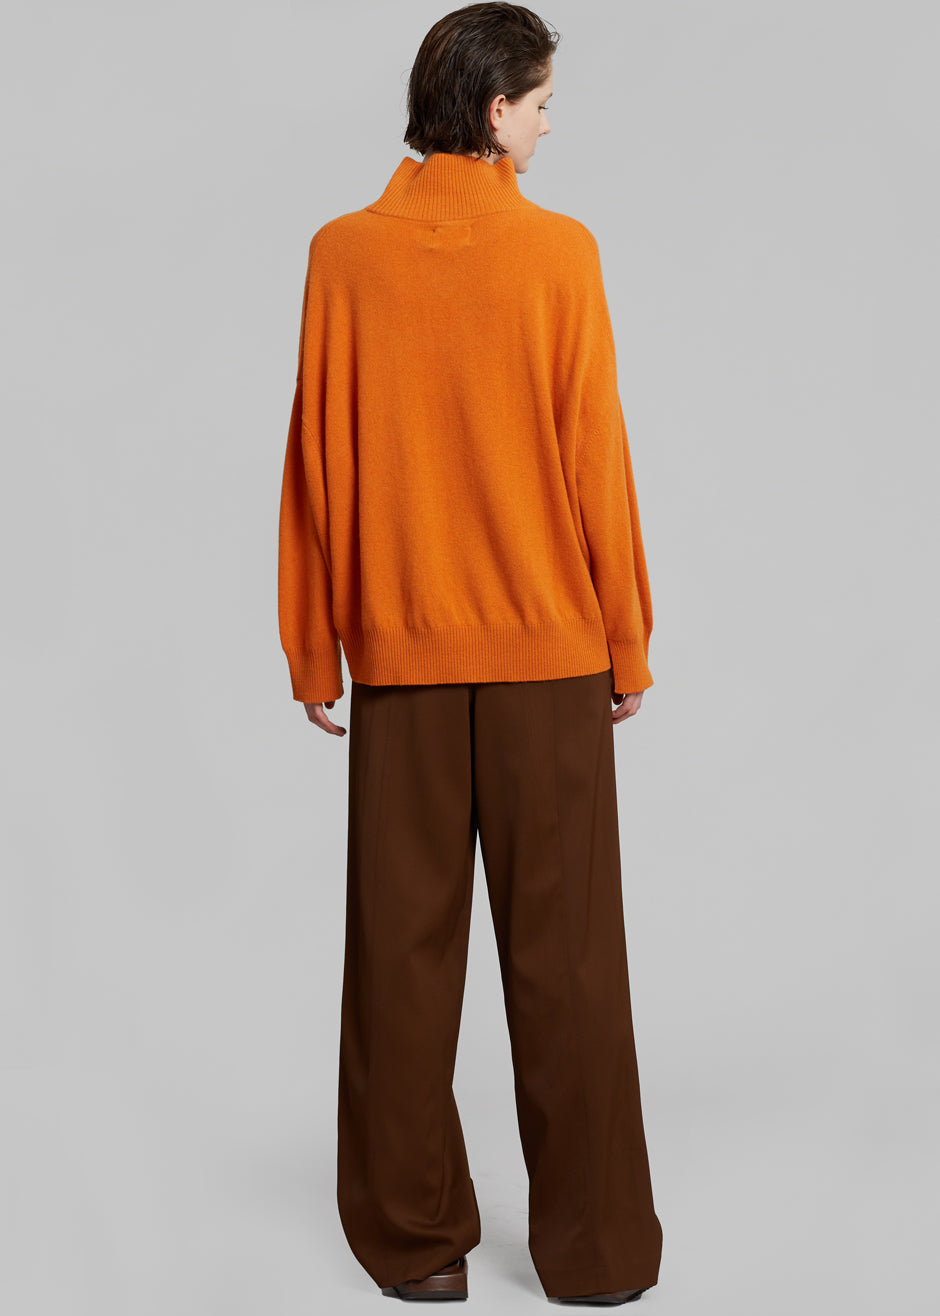 Loulou Studio Murano Cashmere Sweater - Orange - 7